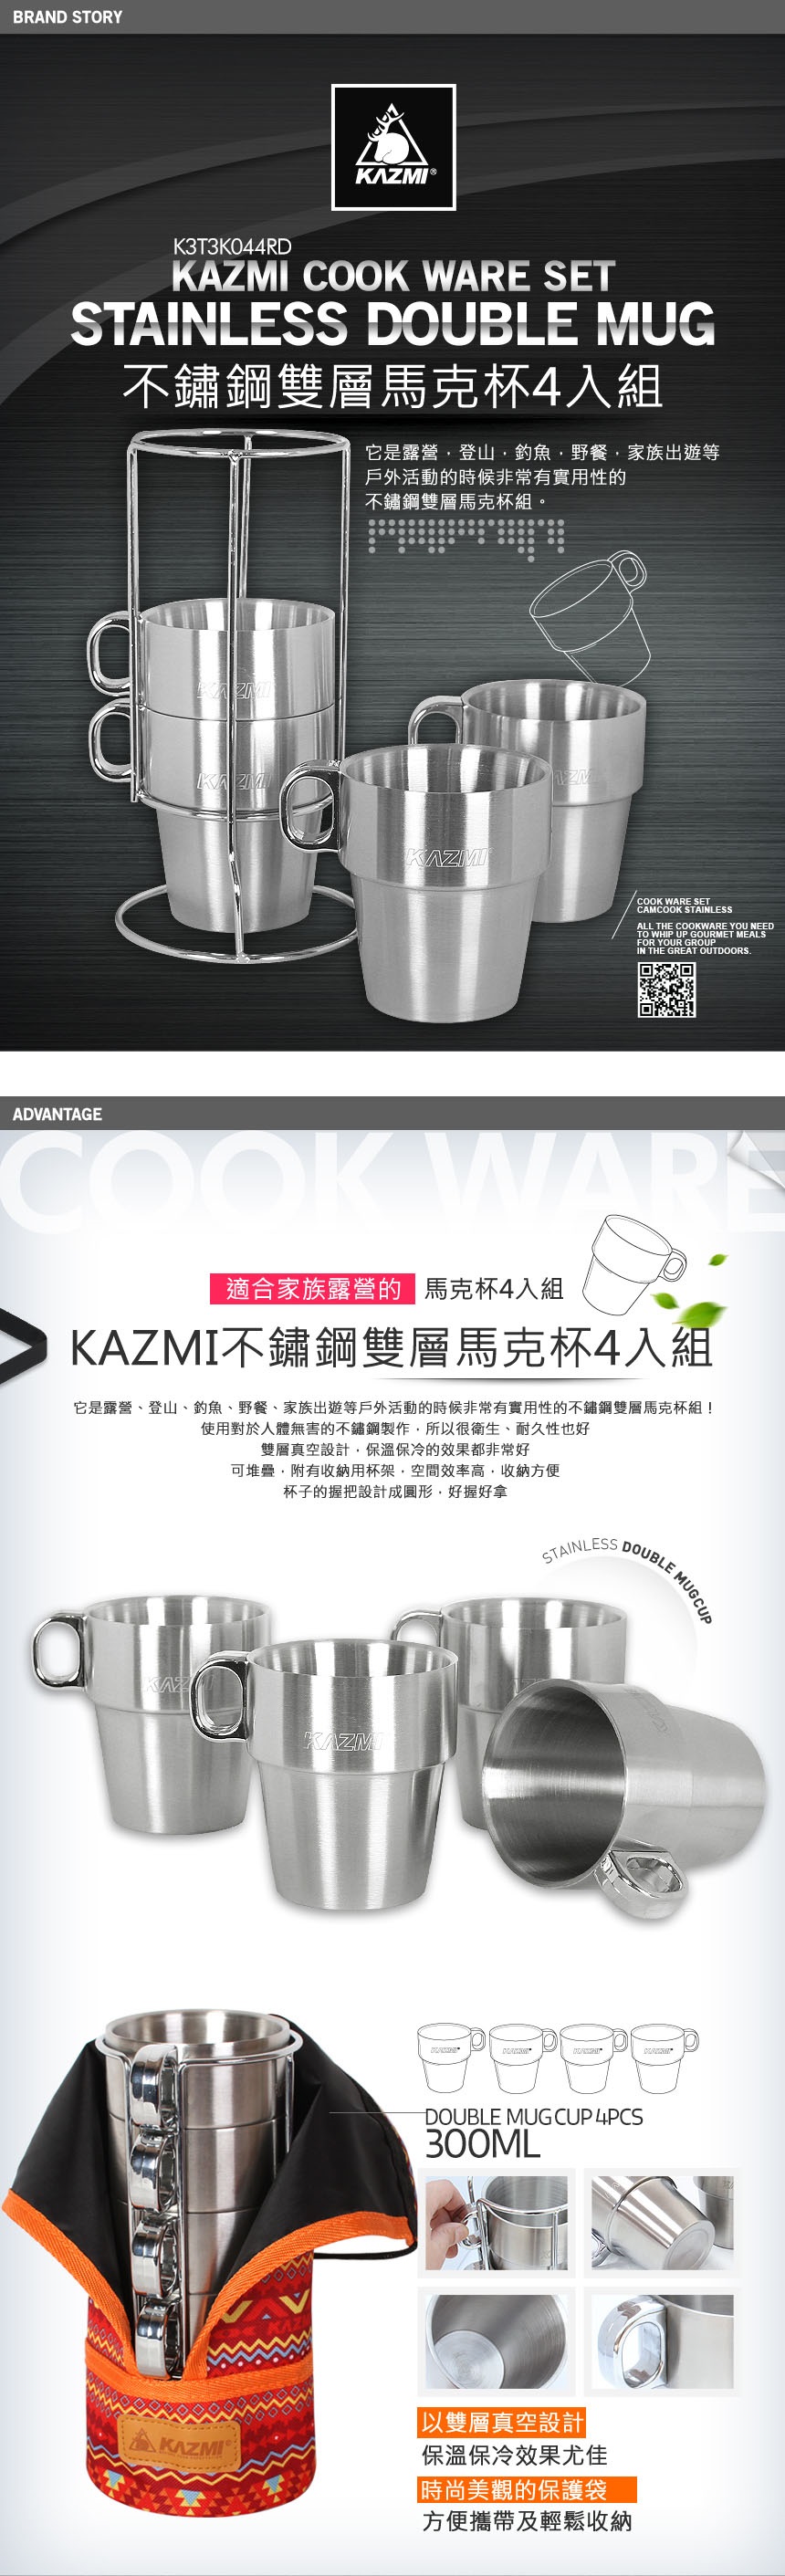 【山野賣客】KAZMI 不鏽鋼雙層馬克杯4入組(紅色) K3T3K044RD